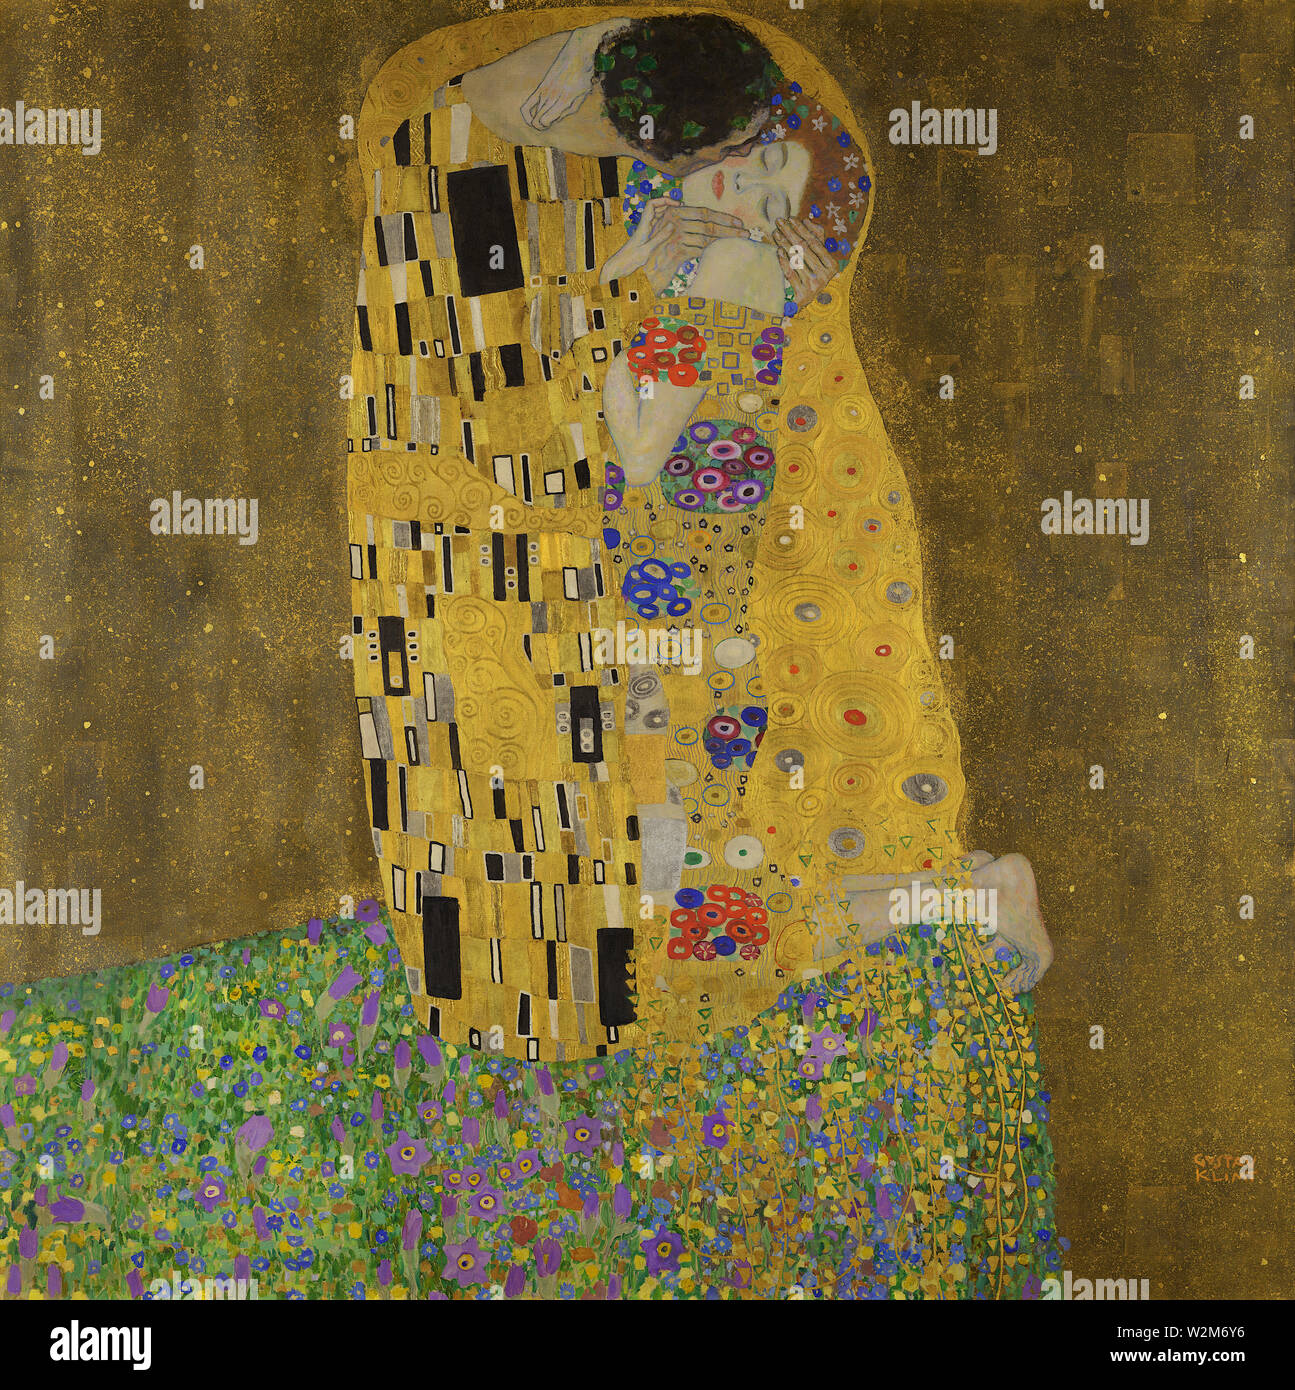 Der Kuss (Der Kuss) (1908) Gemälde von Gustav Klimt - Sehr hohe Auflösung und Bildqualität Stockfoto